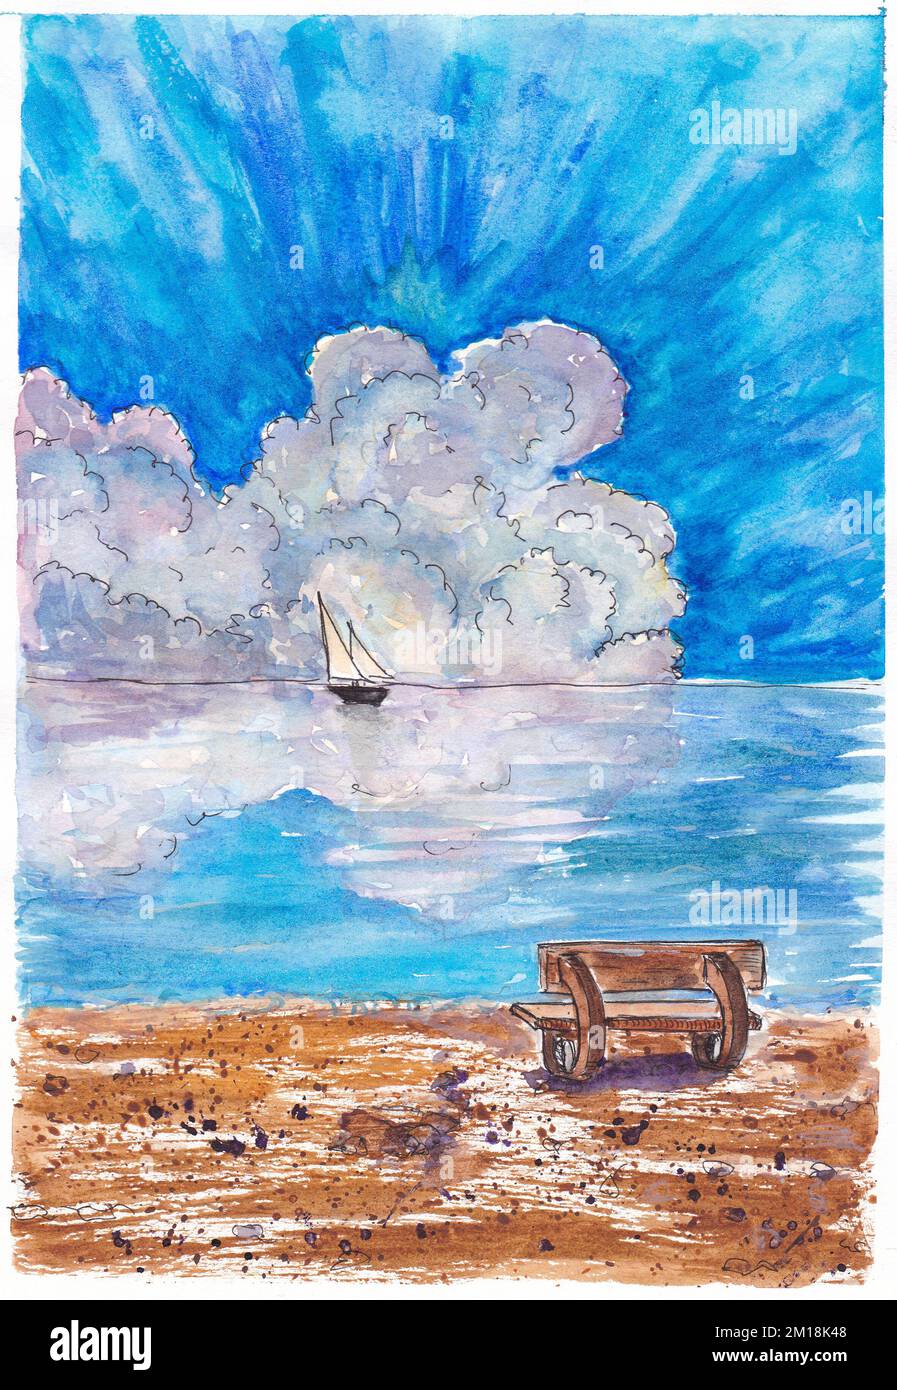 Un banc sur la mer. Le nuage se reflète dans l'eau. Aquarelle du ciel. arrière-plan. Illustration. Peinture conception faite à la main. Dessiné à la main Banque D'Images